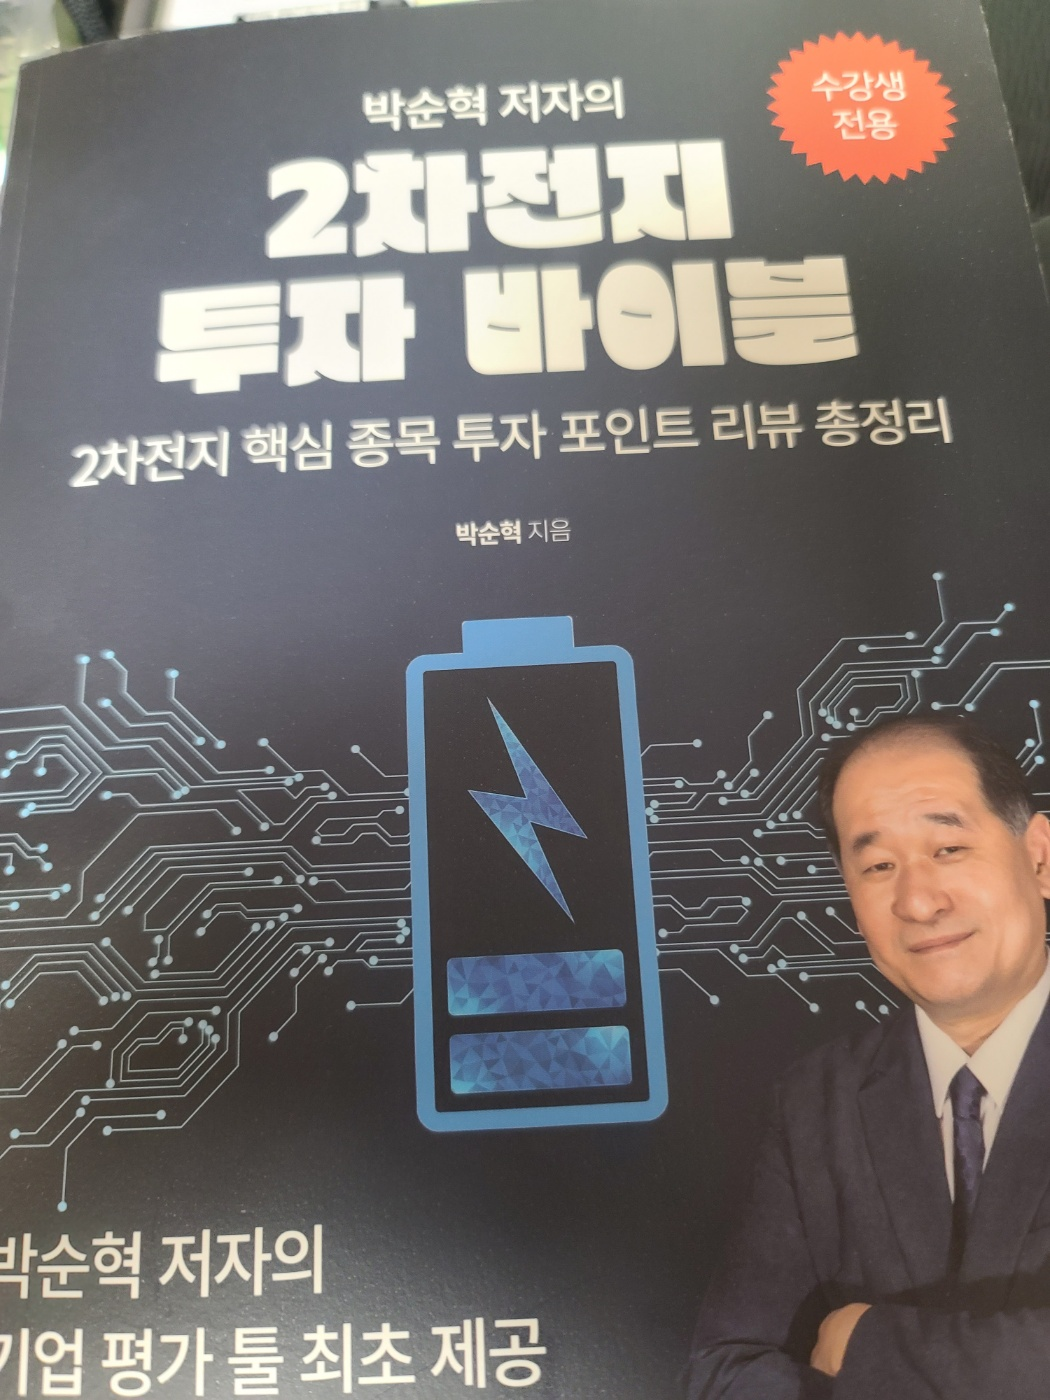 박순혁의 2차전지 투자바이블 책자